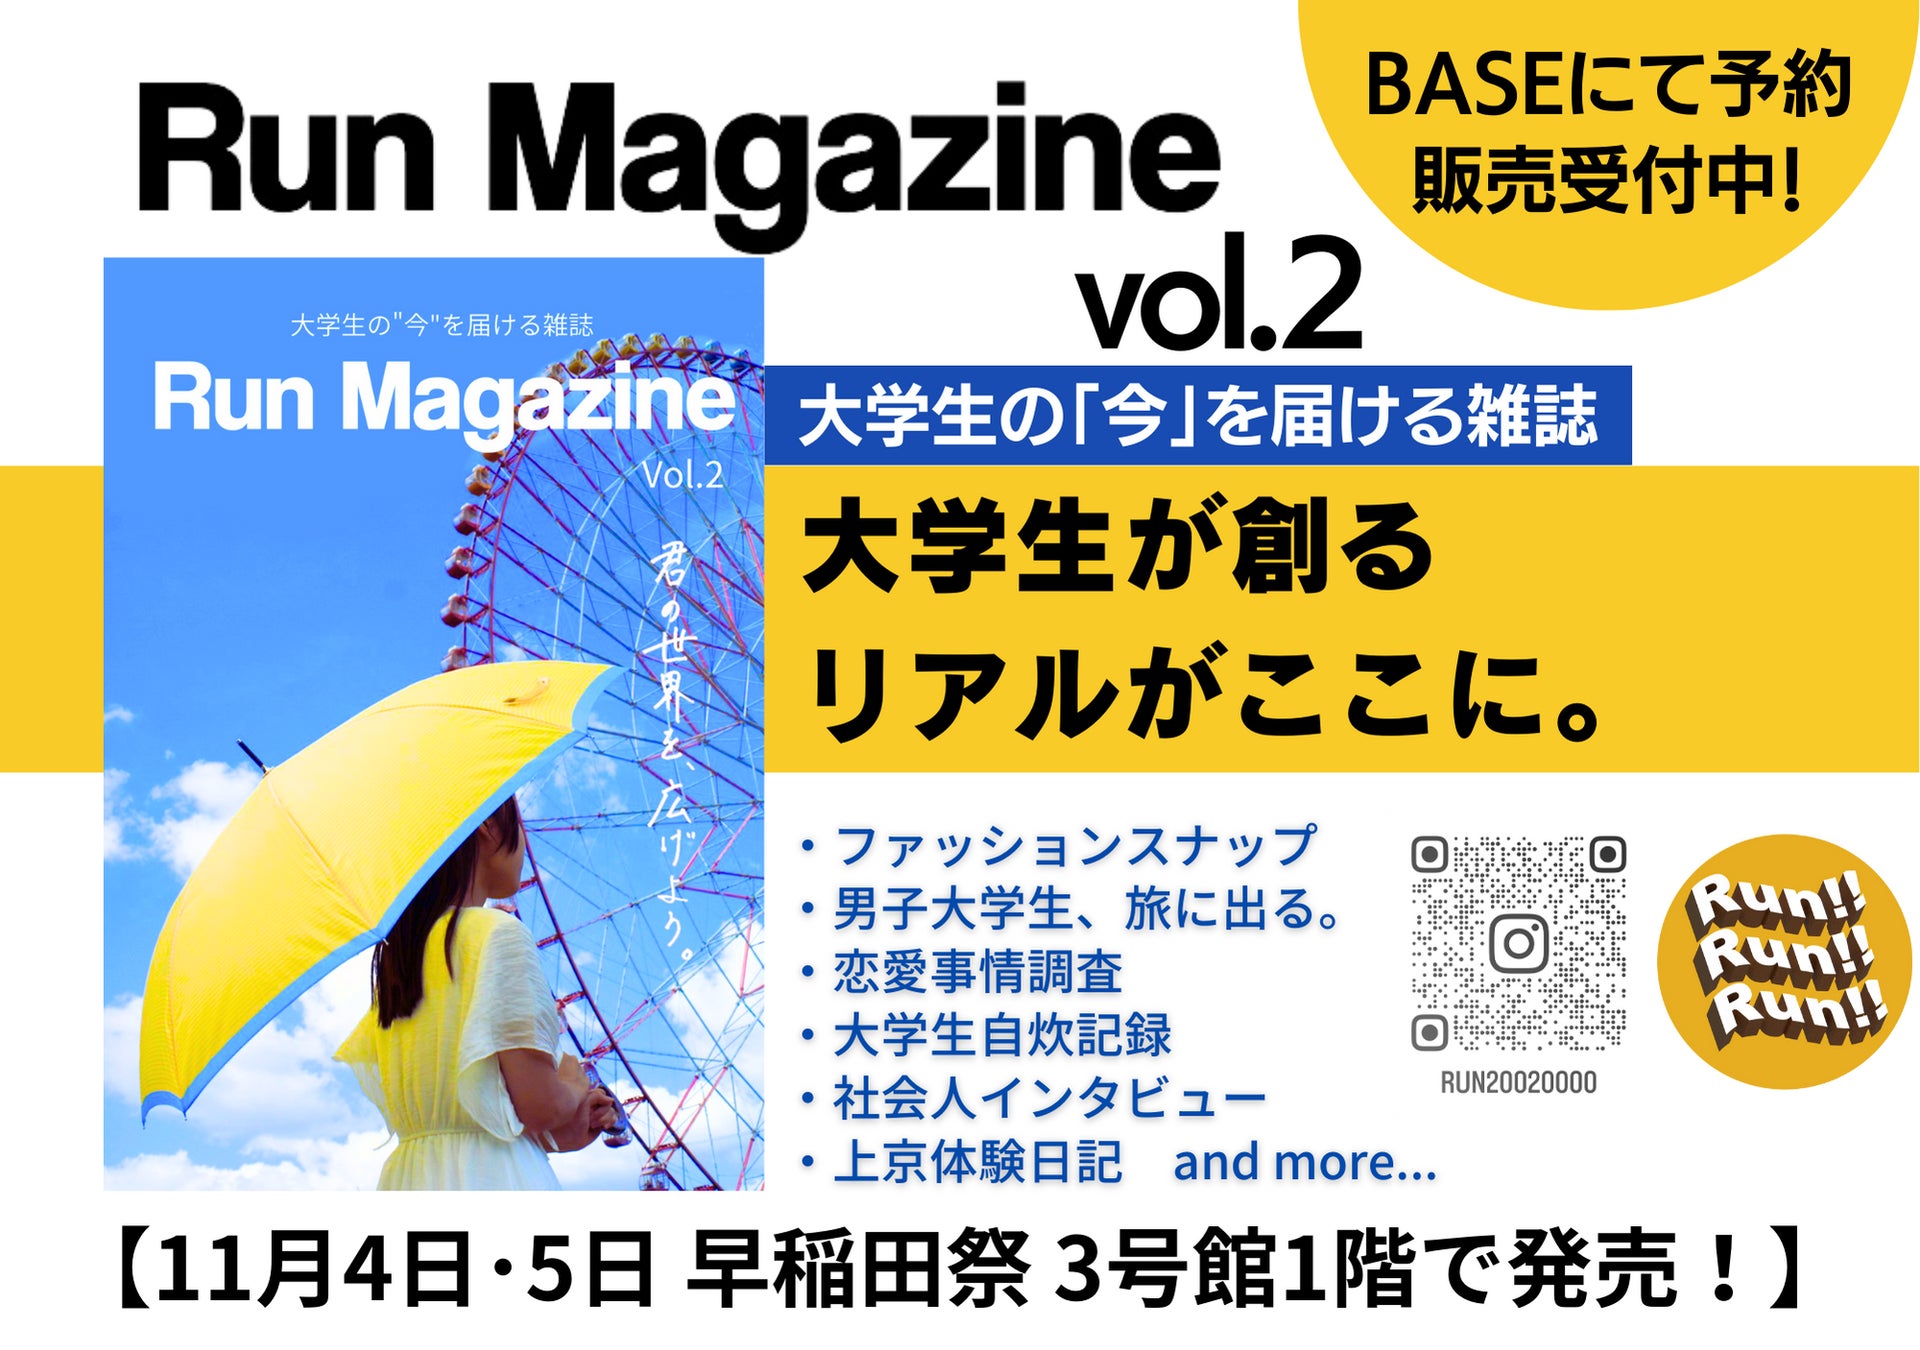 【ビーユーフェス×Run】大学生向け雑誌「Run Magazine」にメイク動画アプリ「ビーユー」と当社代表のインタビュー記事が掲載